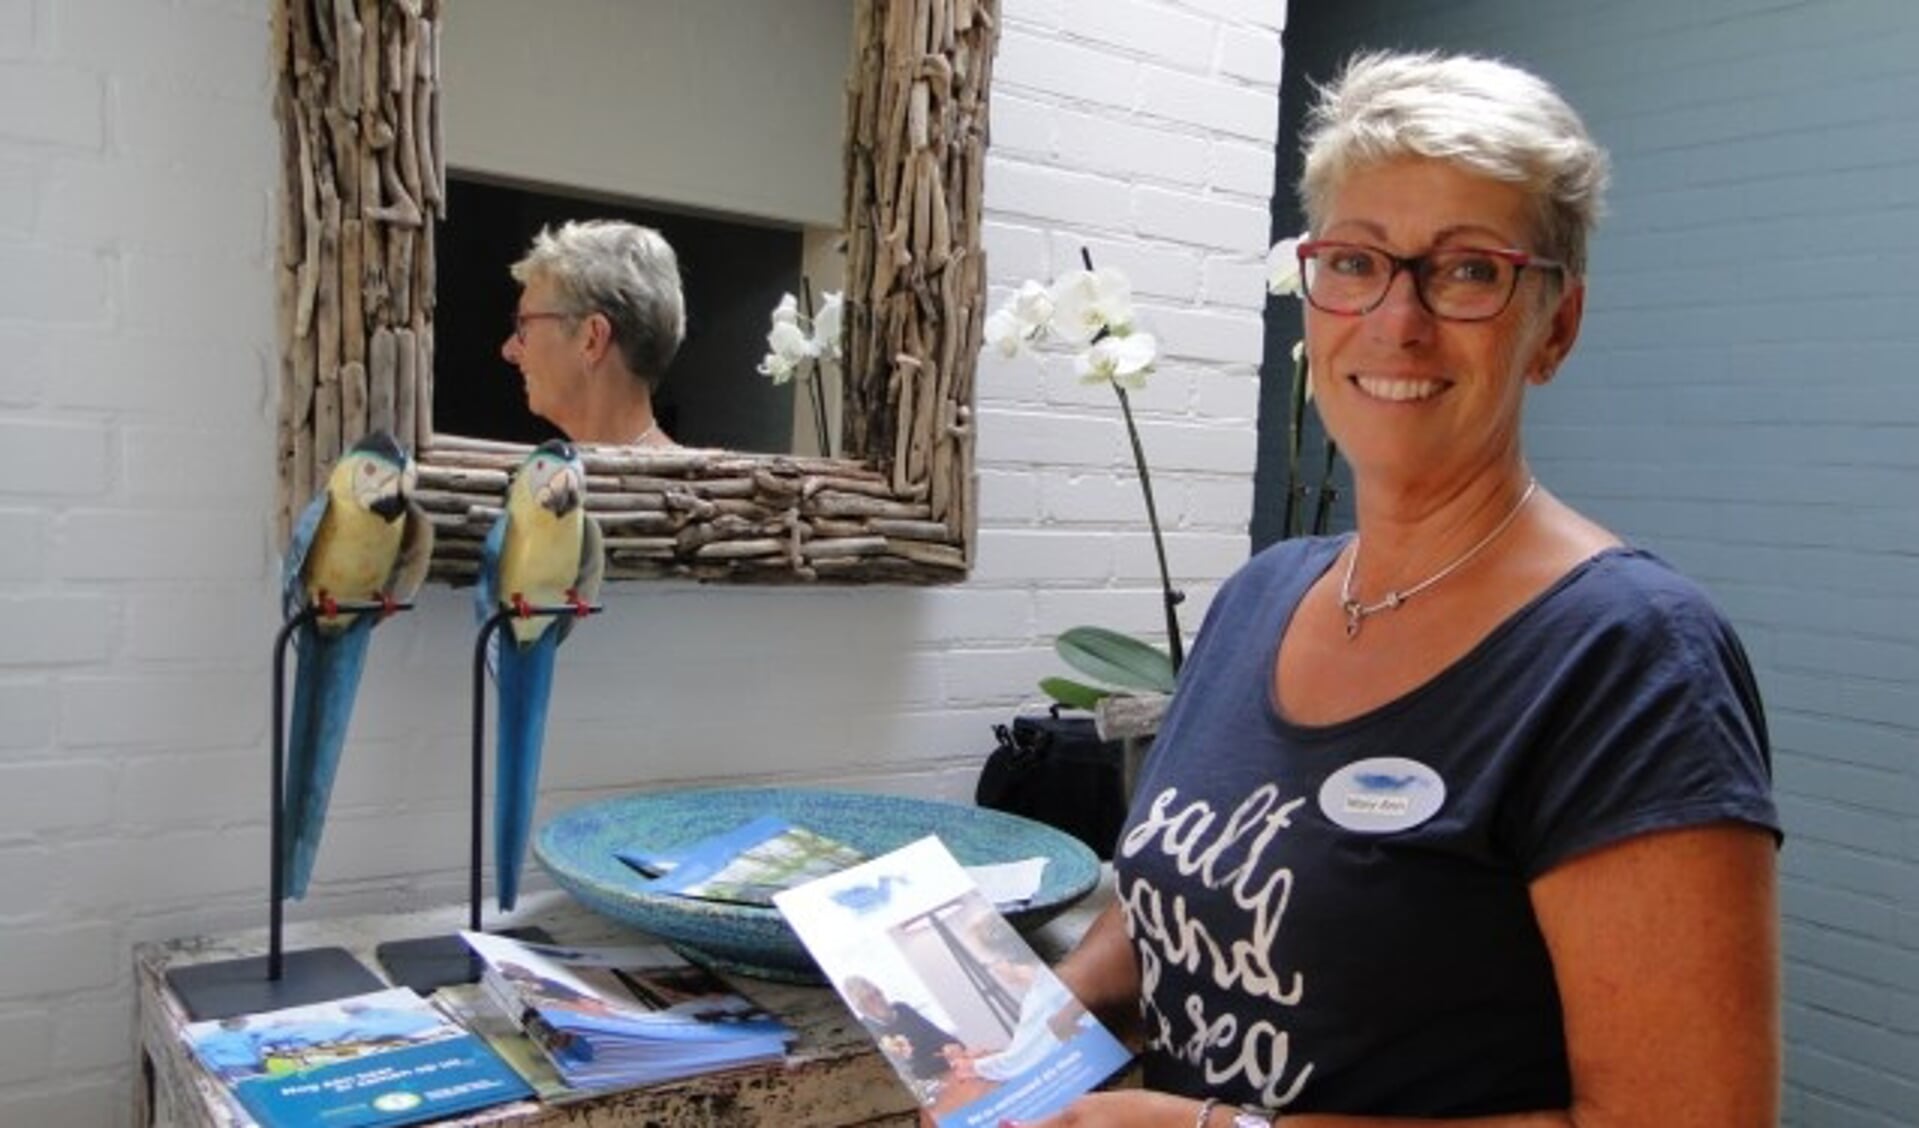 Mary-Ann Eijs is binnenkort de nieuwe coördinatrice van Hospice Oudewater. Per 1 augustus neemt zij het roer over Caroline de Boer, die naar het grotere hospice De Mantelmeeuw in Woerden vertrekt. (Foto: Margreet Nagtegaal)